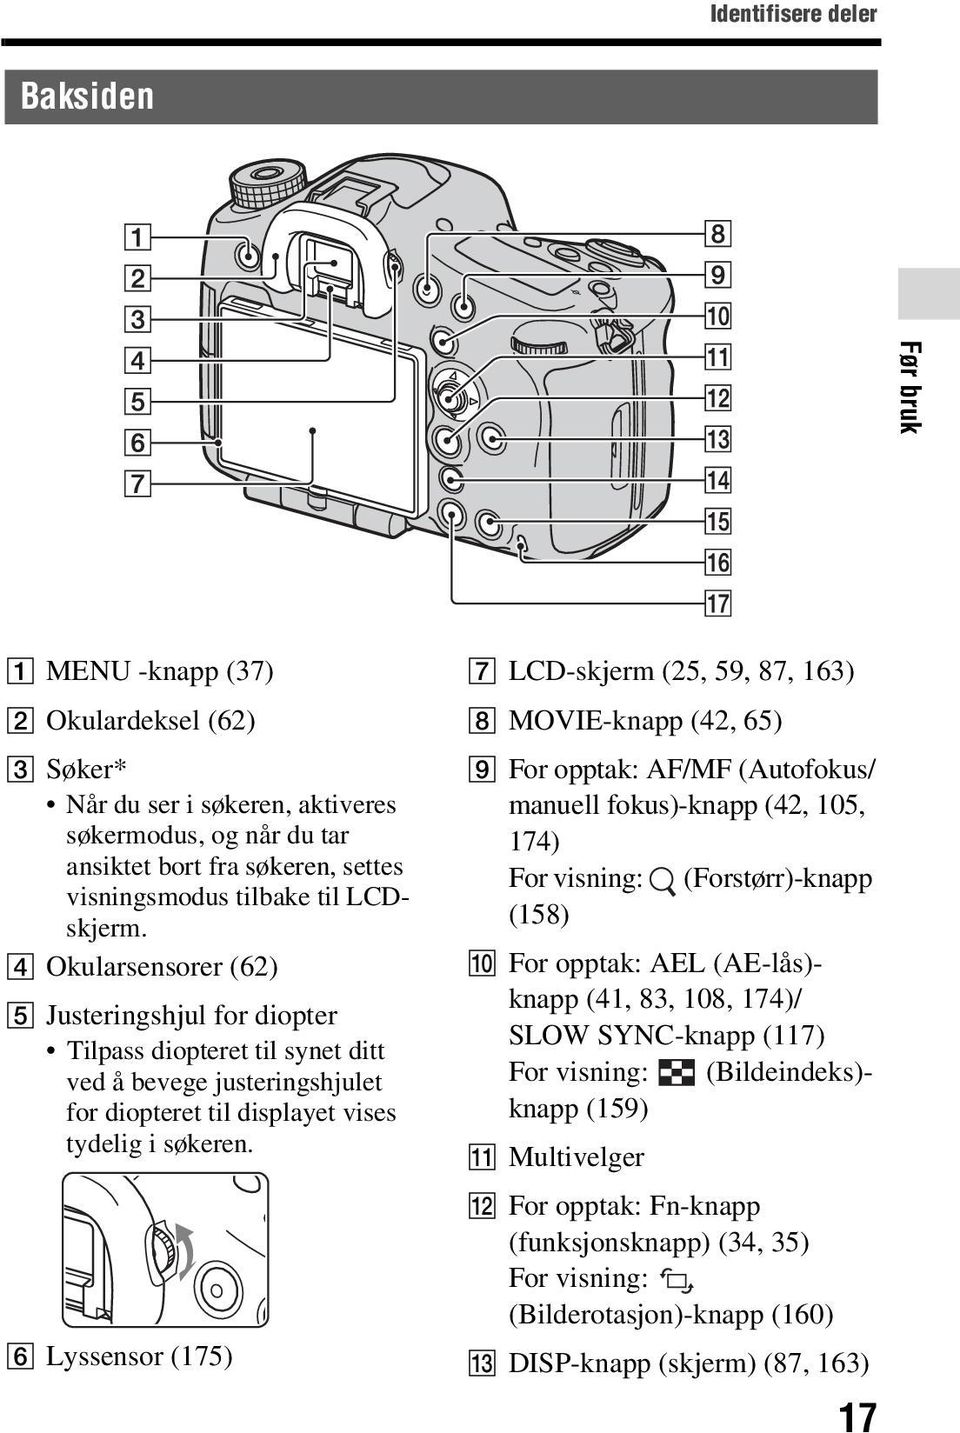 F Lyssensor (175) G LCD-skjerm (25, 59, 87, 163) H MOVIE-knapp (42, 65) I For opptak: AF/MF (Autofokus/ manuell fokus)-knapp (42, 105, 174) For visning: (Forstørr)-knapp (158) J For opptak: AEL